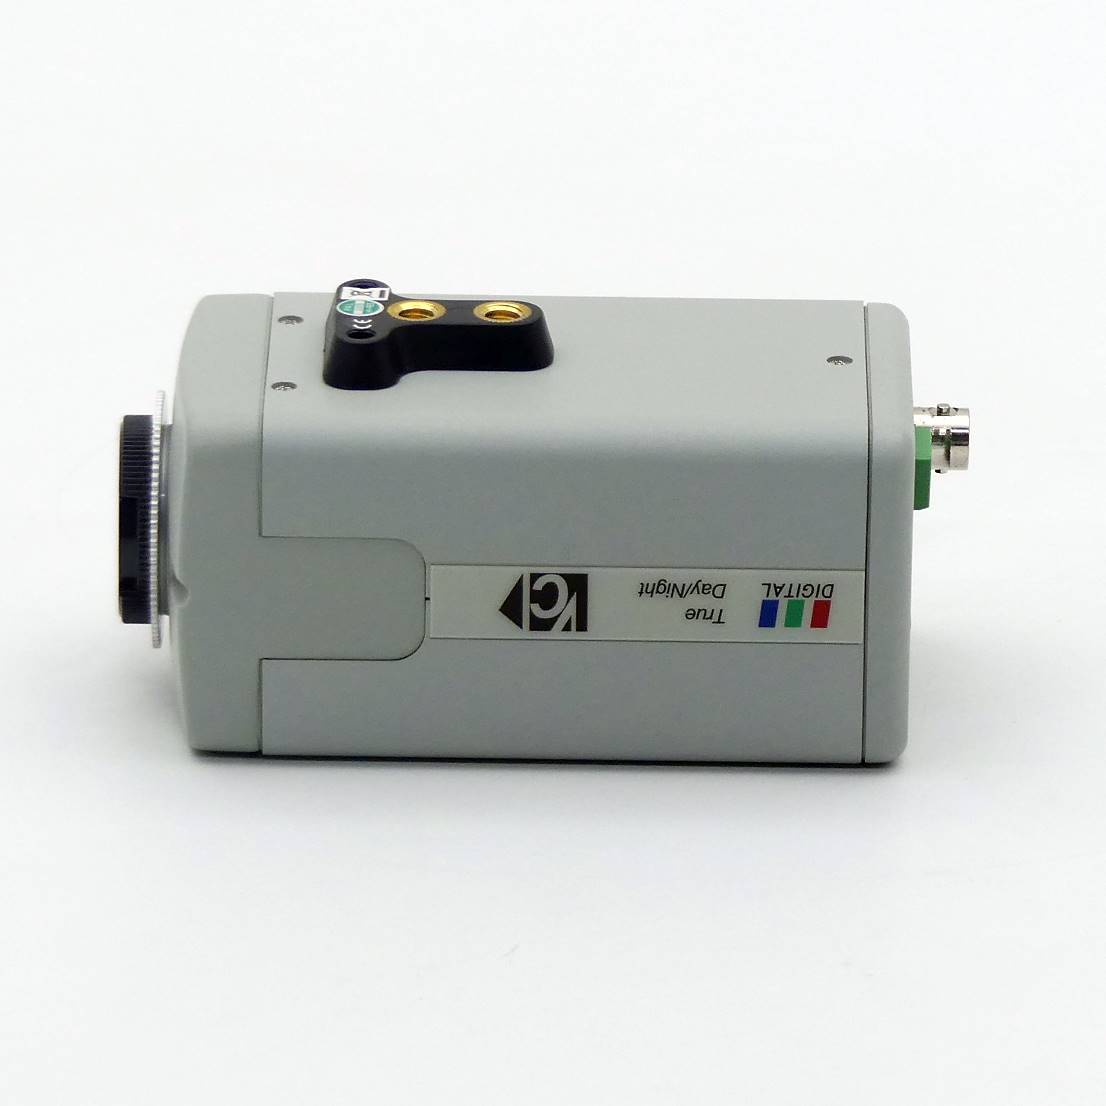 color system camera VC-TNFIT-58230/RS485 